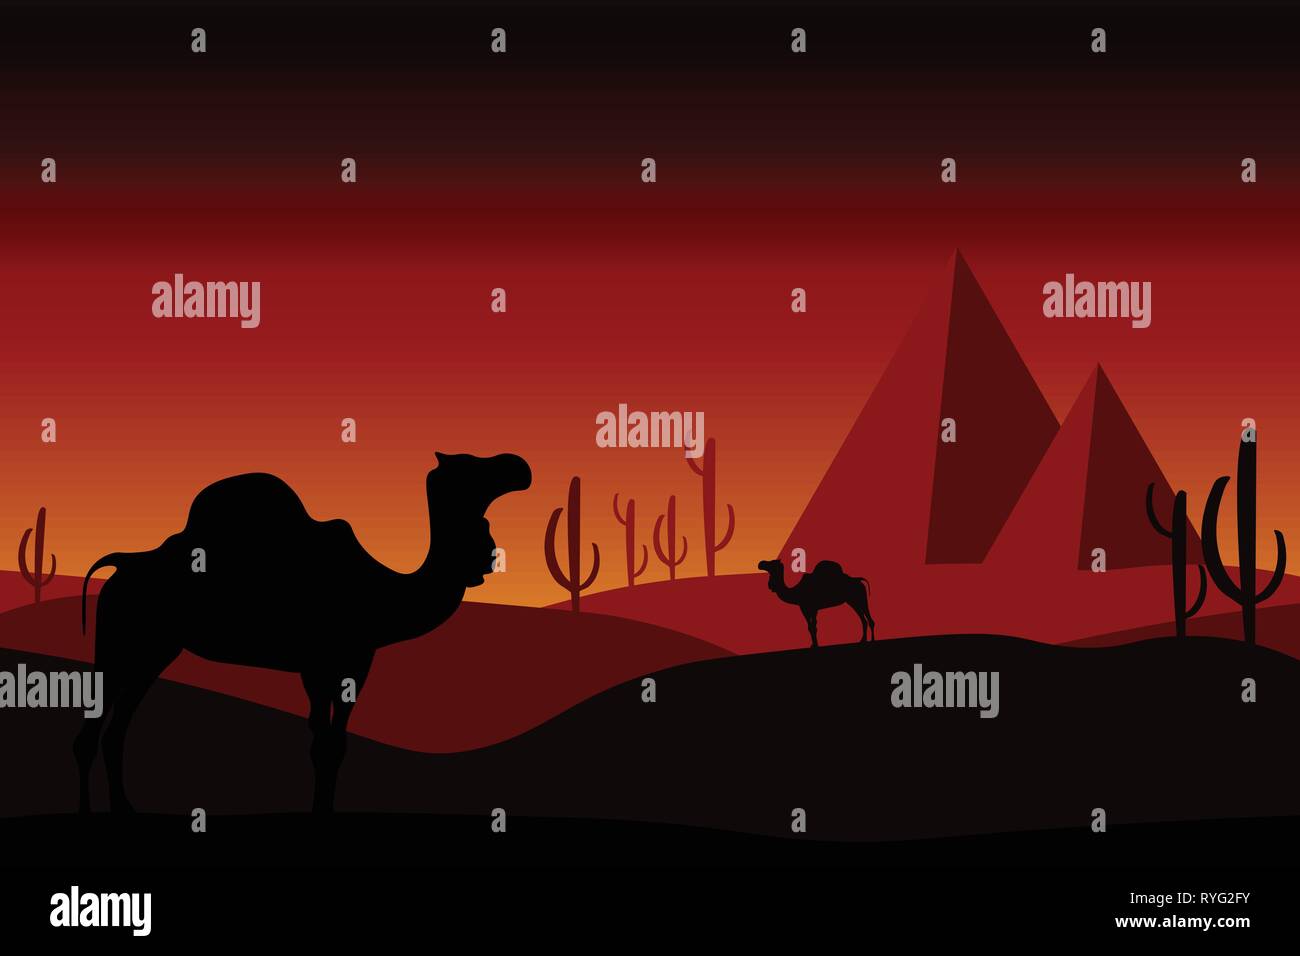 Wüste Konzept - Kamele in der Wüste mit Kakteen, Sanddünen und Pyramiden. Landschaft, Panorama, Blick von außen auf die wilde Natur. Editierbar Abbildung. Stock Vektor